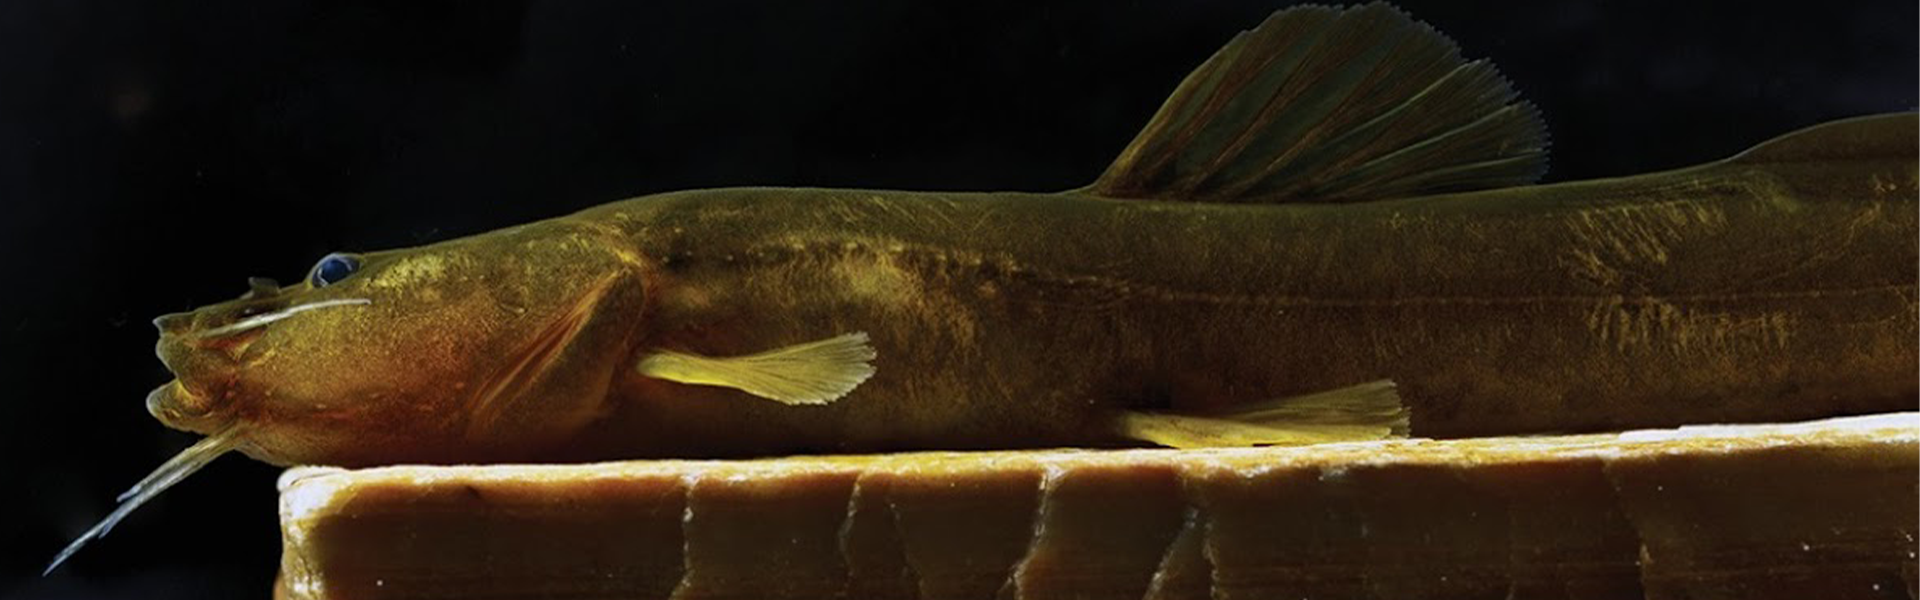 Nova espécie de peixe é descoberta na bacia do Rio Grande, em Minas Gerais